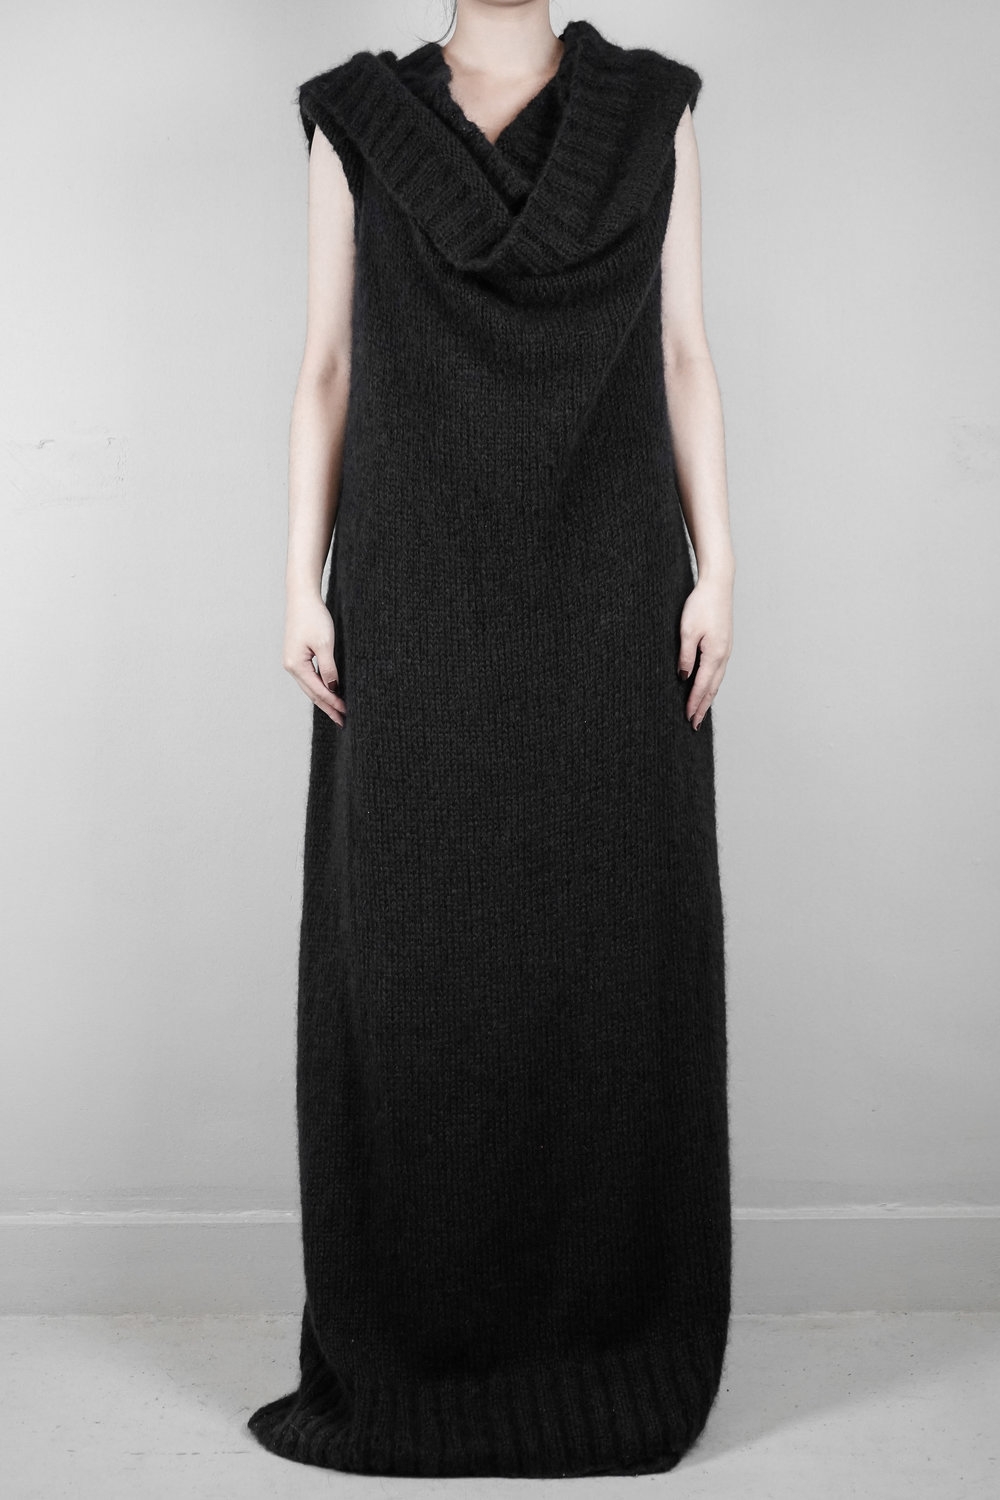 Ann Demeulemeester – Womens – Jumper Dress – Grey – Mohair / Nylon / Wool – Handknitted